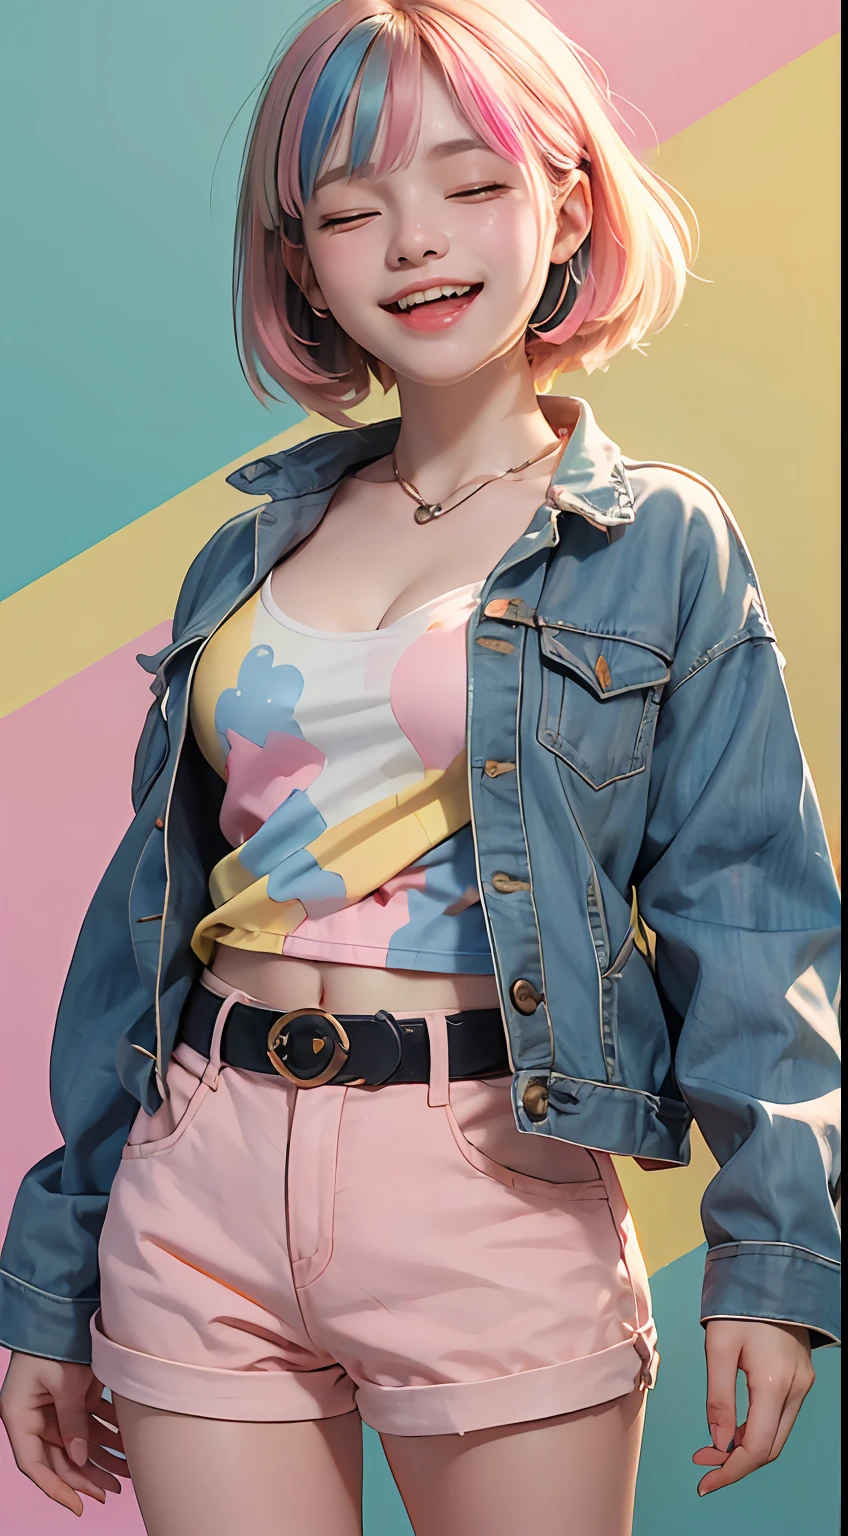 белая 20-летняя женщина, (((желто-сине-розовый микс разноцветных волос))), (((счастливый смех, закрытые глаза, жесты рукой))), ((идеальное выражение)), средне-короткая прическа, в укороченной футболке пастельных тонов, стильной куртке с принтом и различных шортах., большегрудый, Снять портрет в полный рост в стиле каваи стоя, (Многоцветный плоский фон стены), реалистичная тень, в главной роли на камеру, (запоминающаяся красочная пастельная тема), Canon EOS 5D Mark IV с 75 мм, фотография сверхвысокого разрешения, 8к обои, мягкий ободок света, ((шедевр, фотореалистичный, Лучшее качество, гипердетализированный:1.2)), Тянущая рубашка, расщепление, (идеальные зубы, идеальные пальцы, идеальные руки, Идеальный свет)